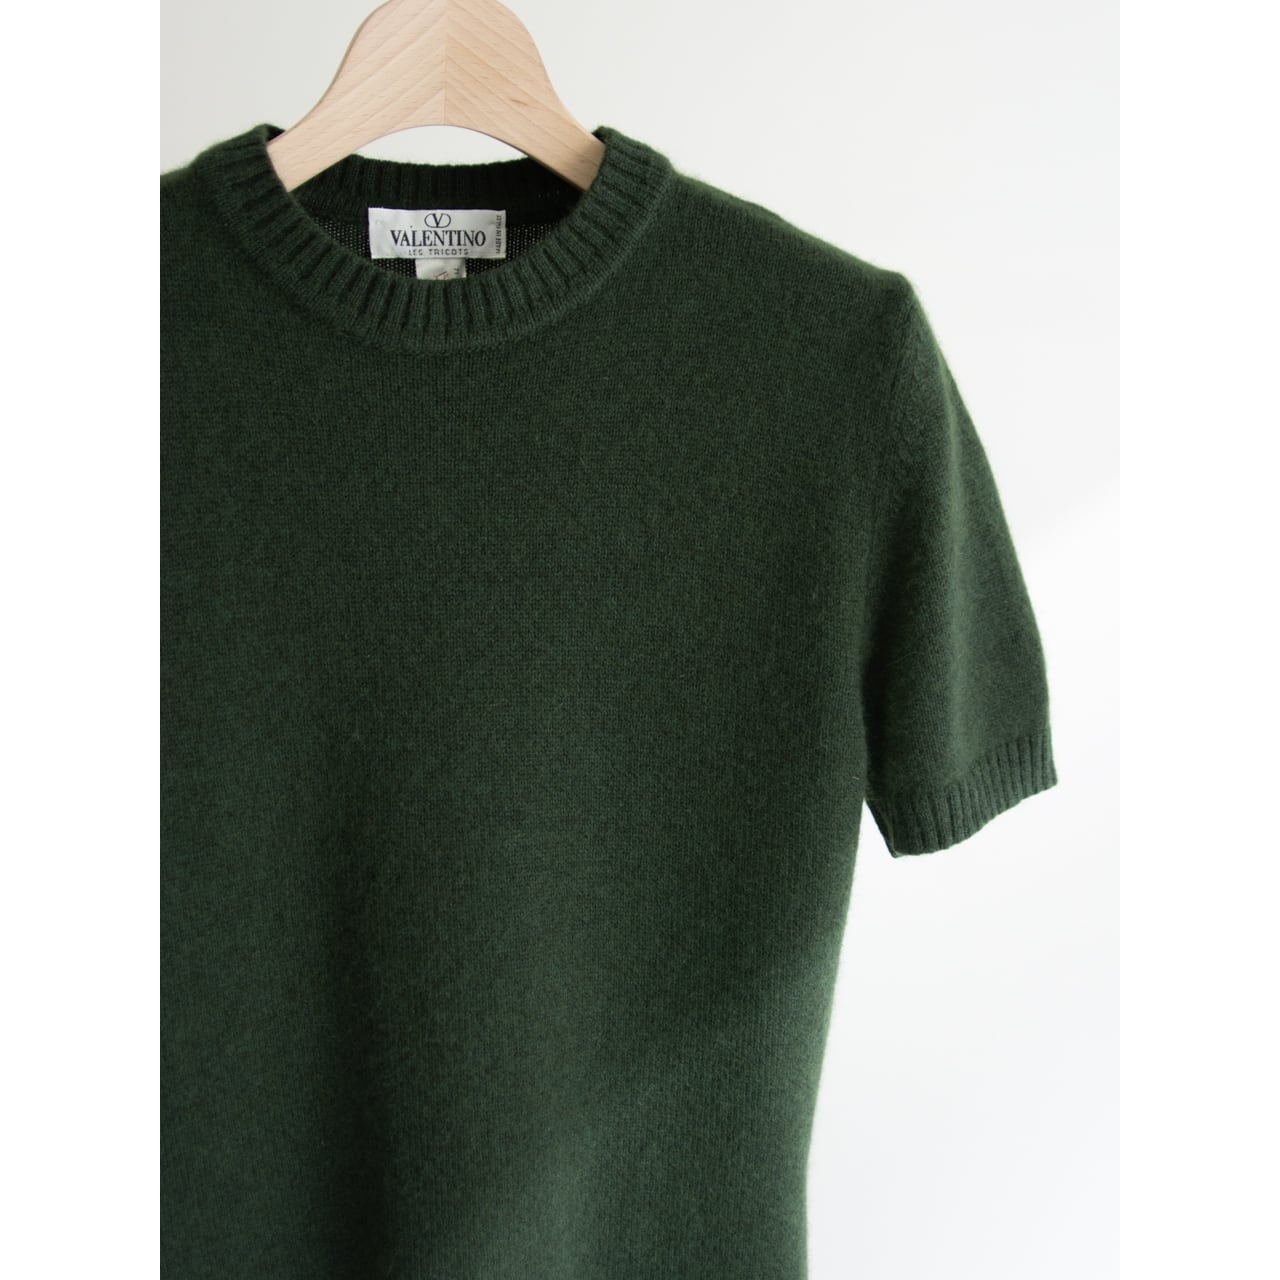 VALENTINOMade in Italy Wool Angora Nylon H/S Sweater